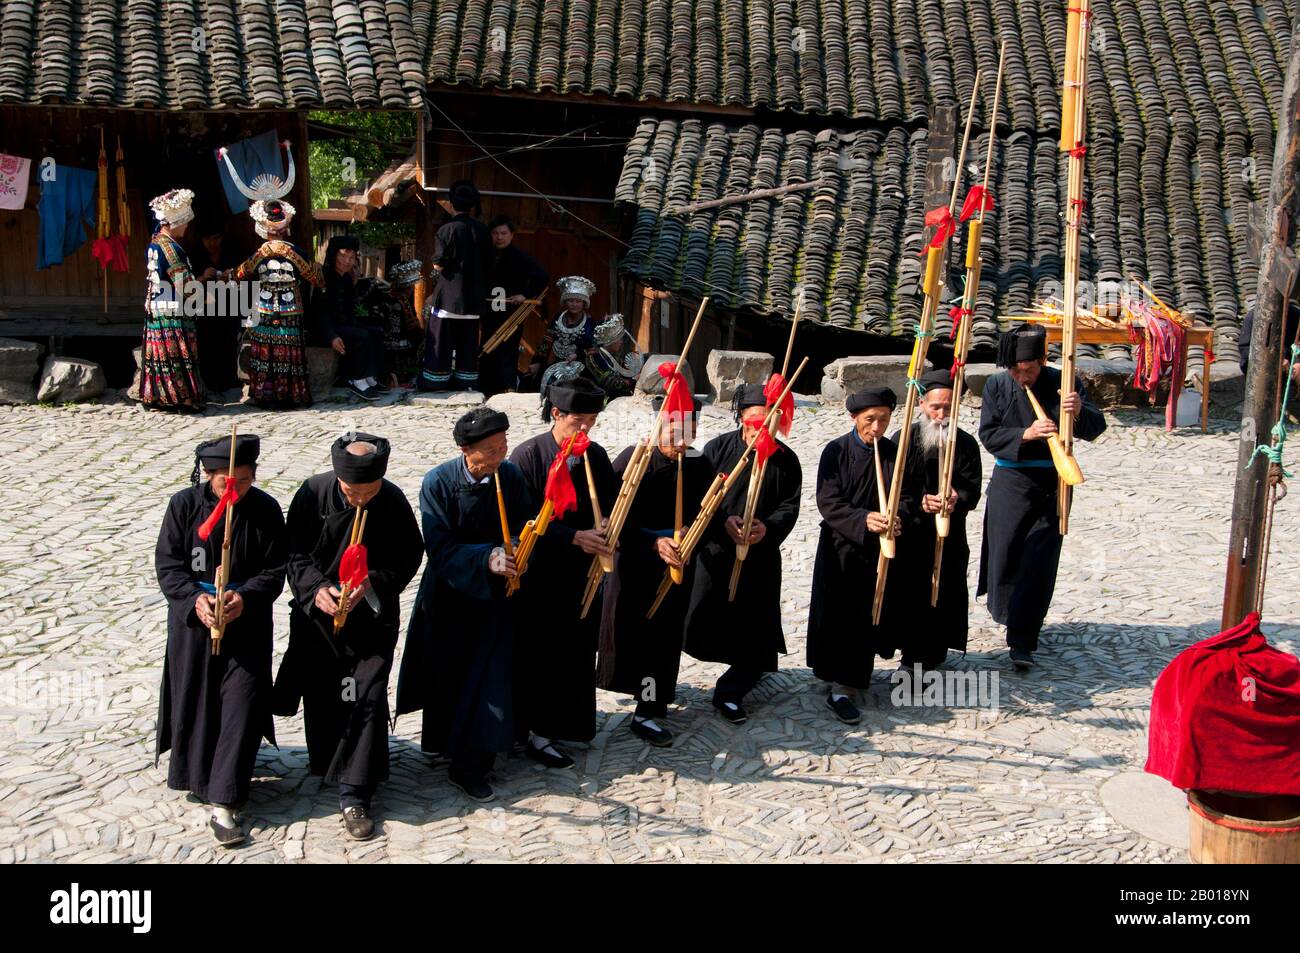 Cina: Gli uomini di Miao suonano il lusheng, uno strumento tradizionale di  Miao, nel villaggio di Langde Shang, a sud-est di Kaili, provincia di  Guizhou. Il lusheng (anche scritto lu sheng; scritto